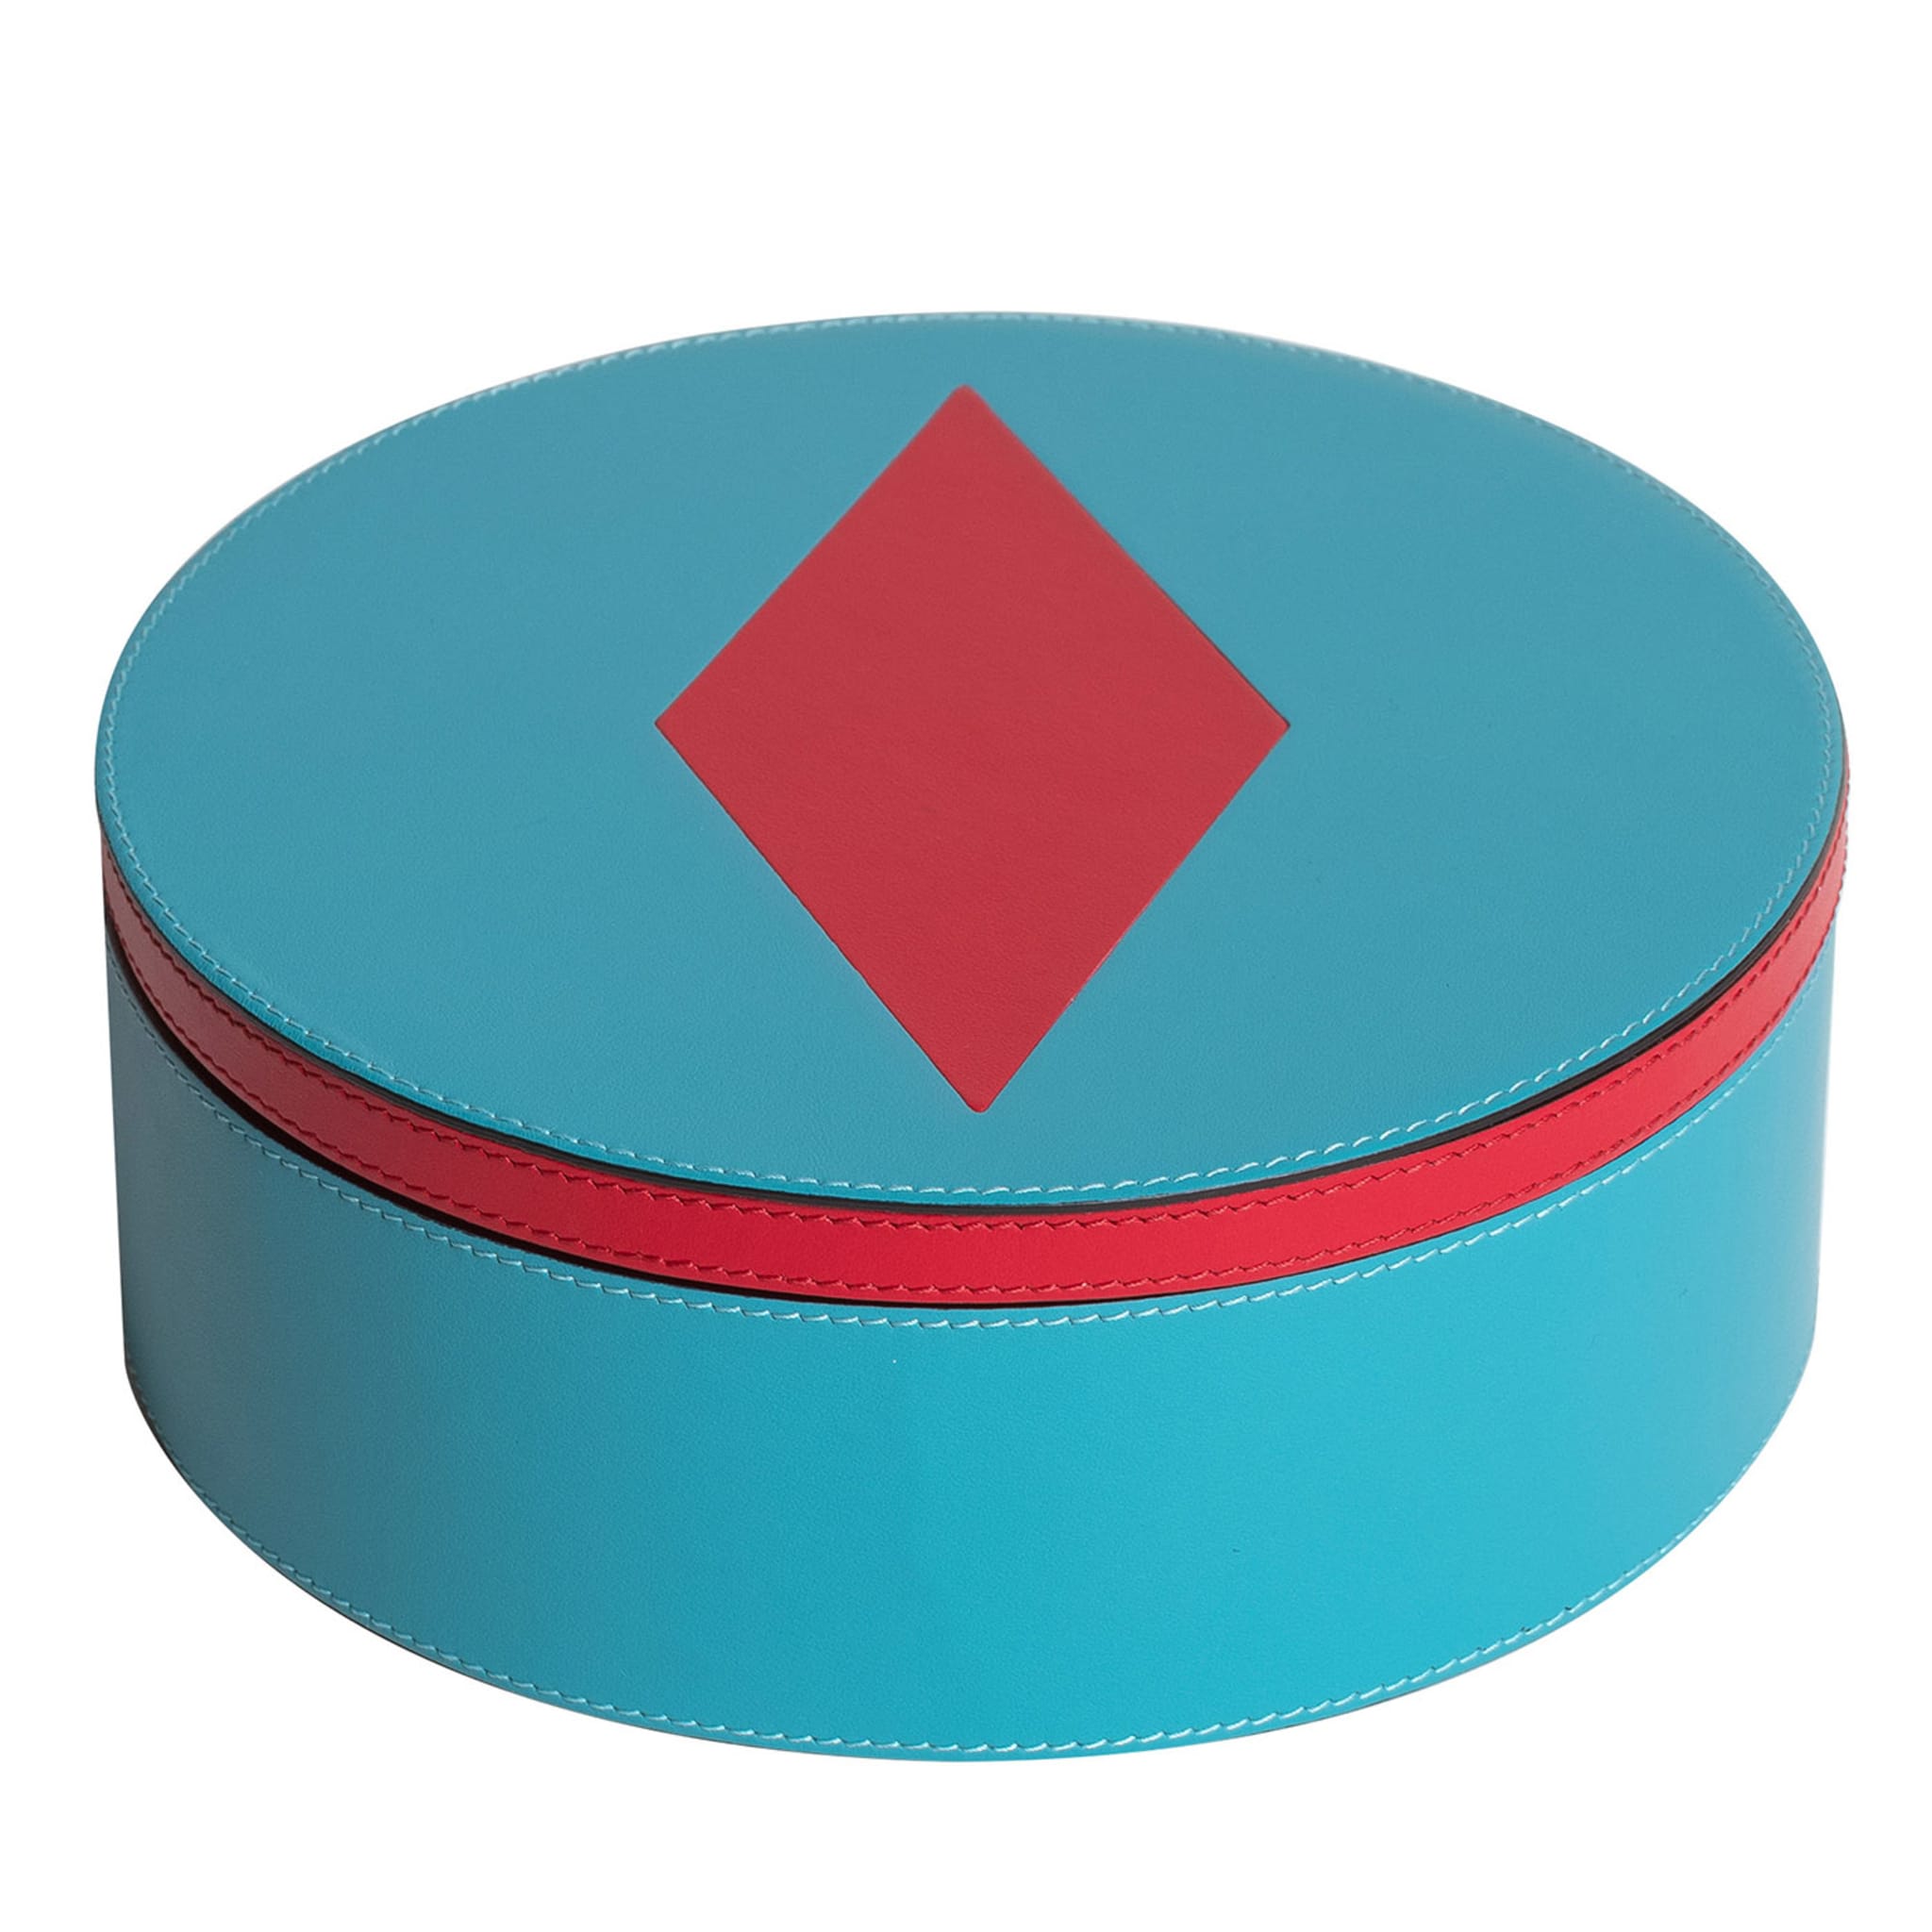 Intarsio Briolette Boîte circulaire turquoise et rouge véritable - Vue principale